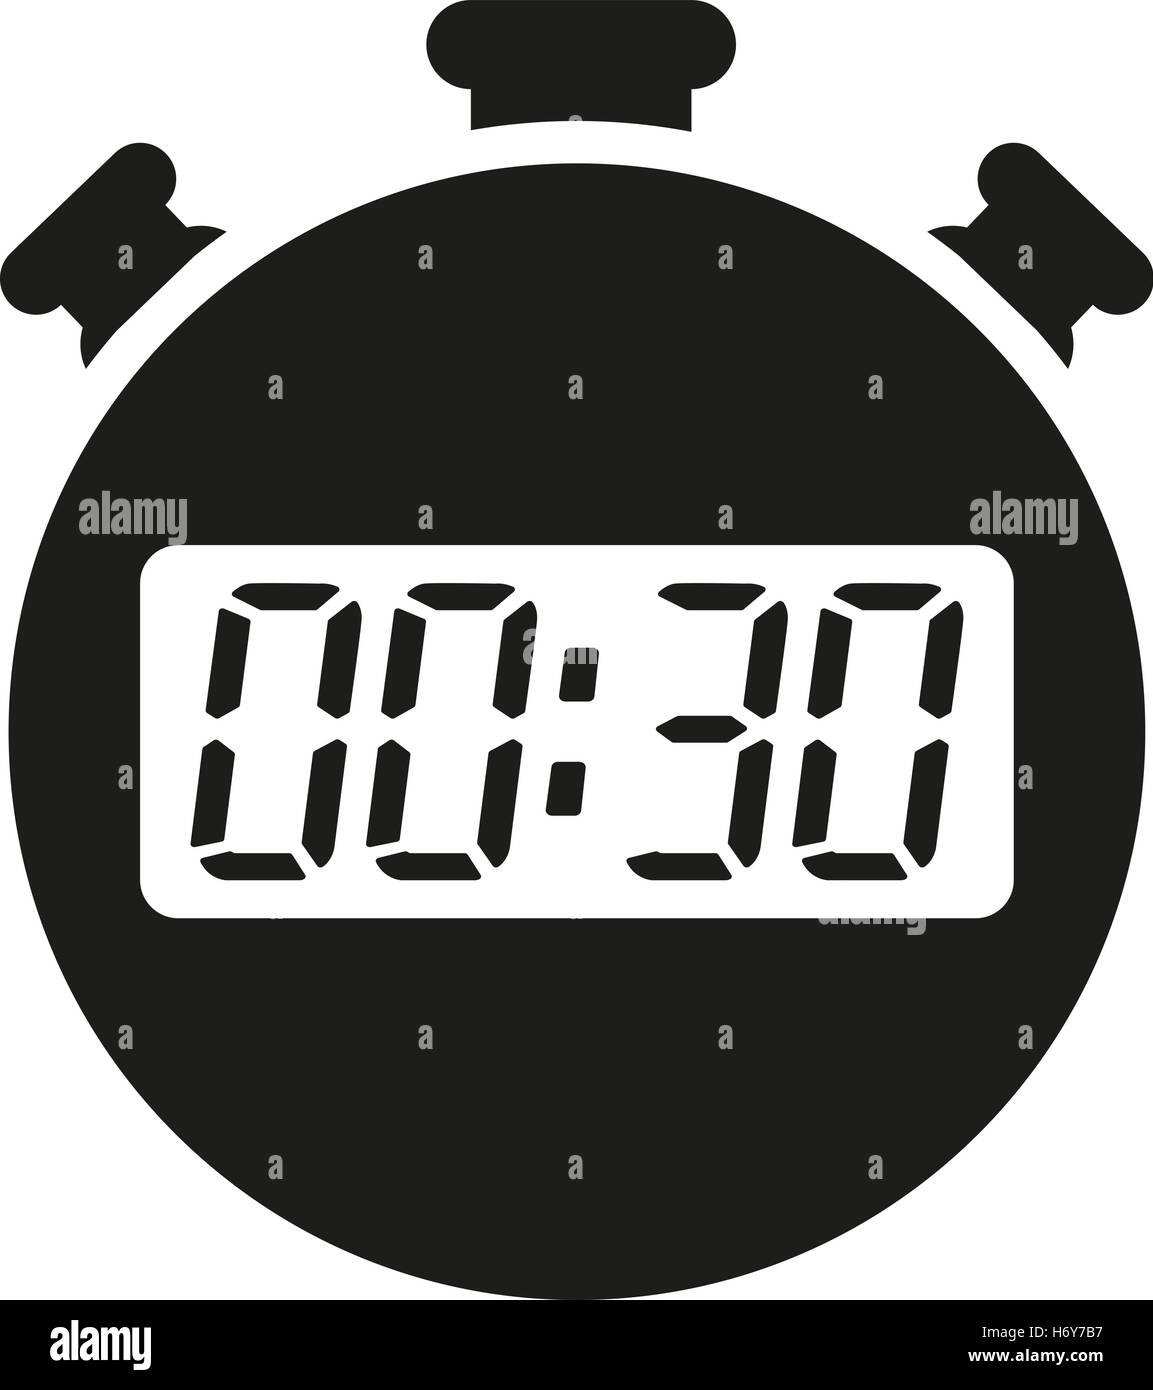 Los 30 segundos, minutos icono cronómetro. Reloj y el Reloj, temporizador  de cuenta regresiva, símbolo. Interfaz de usuario. Web. Logotipo. Firmar.  Diseño plano. App. Stock v Imagen Vector de stock - Alamy